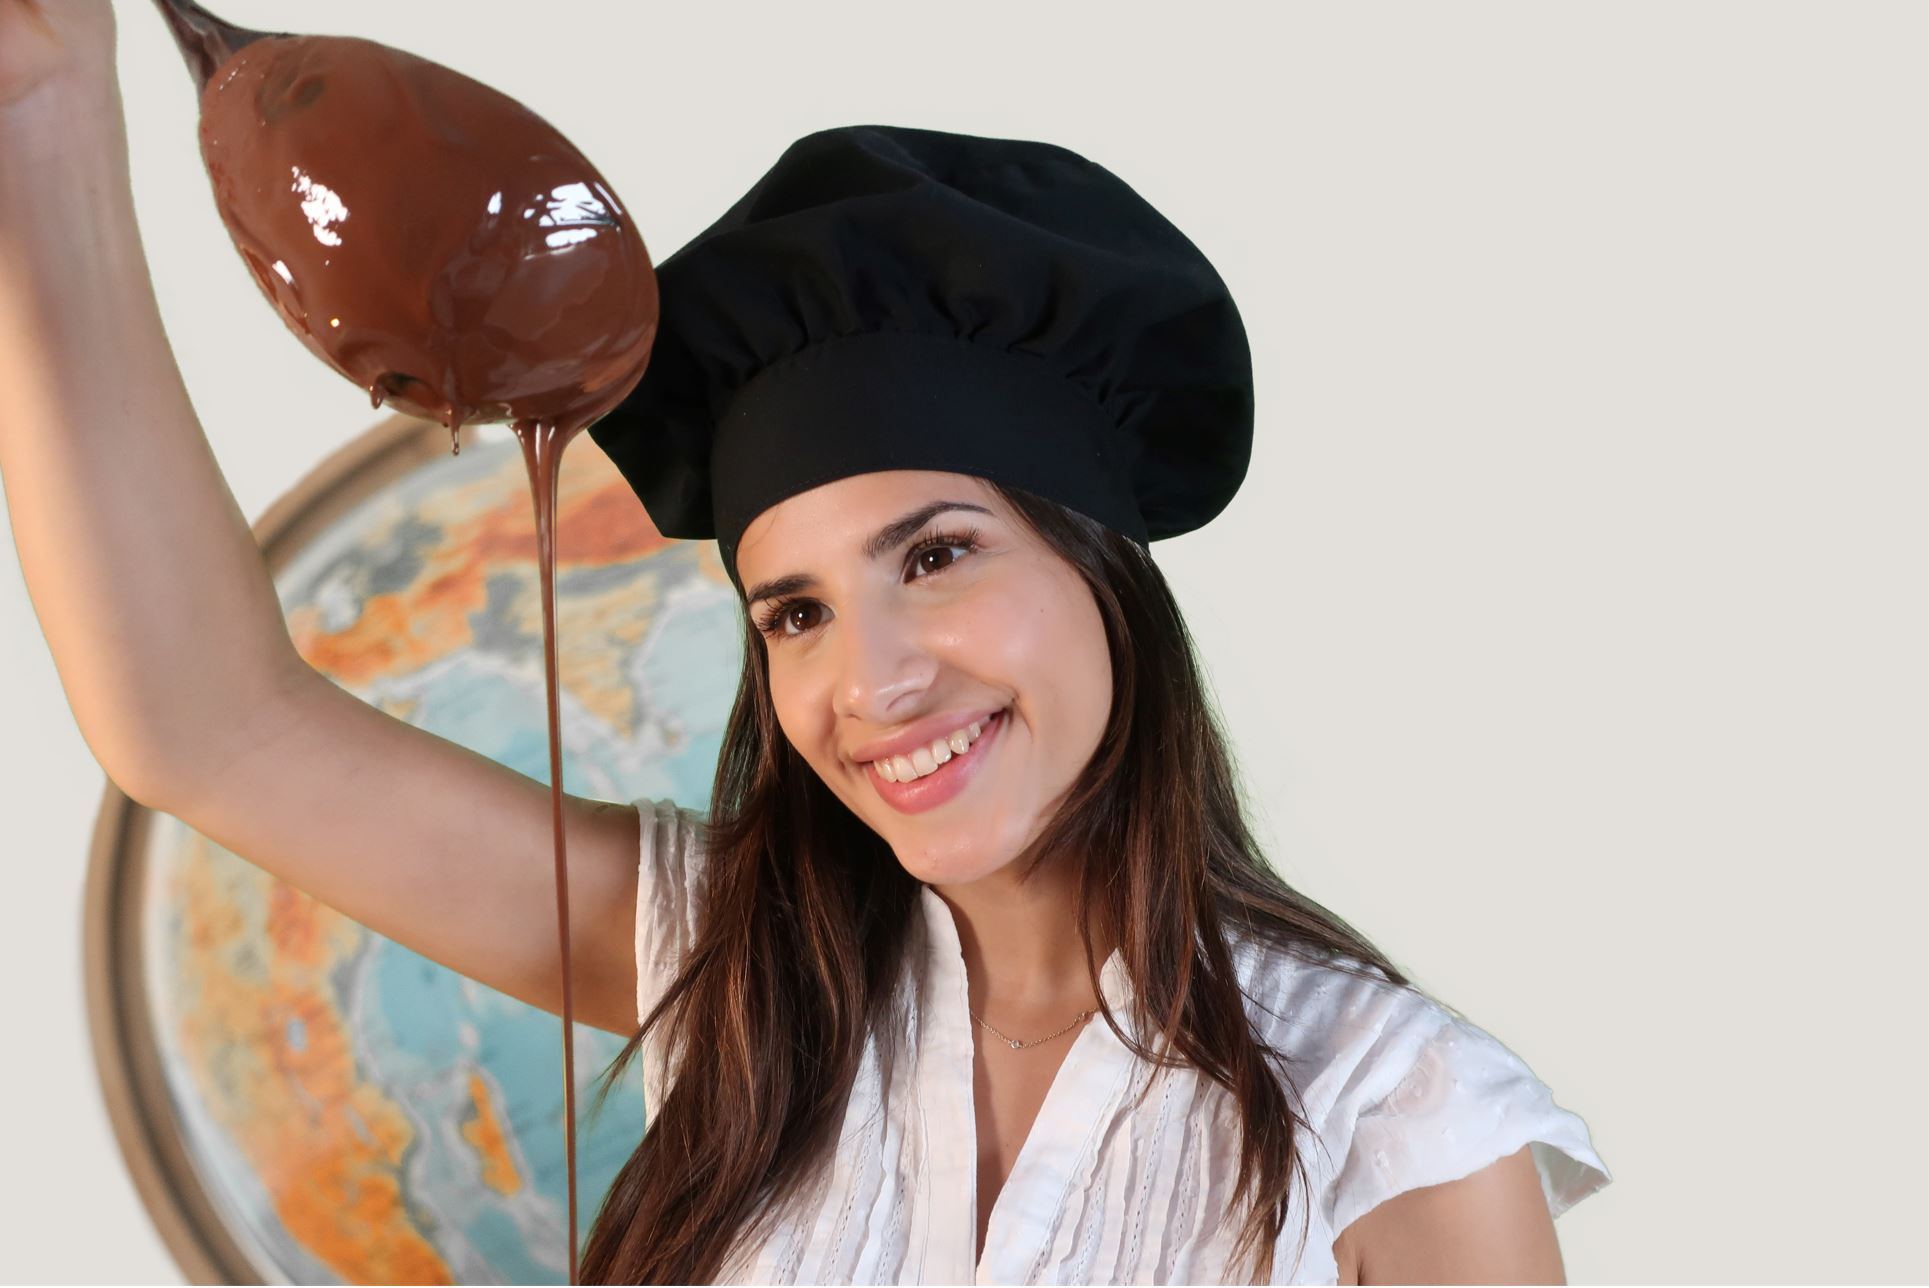 90 Min. Schokoladen-Workshop und -Tasting inkl. mexikanische Trinkschokolade für 1 Person bei Soirée Chocolat